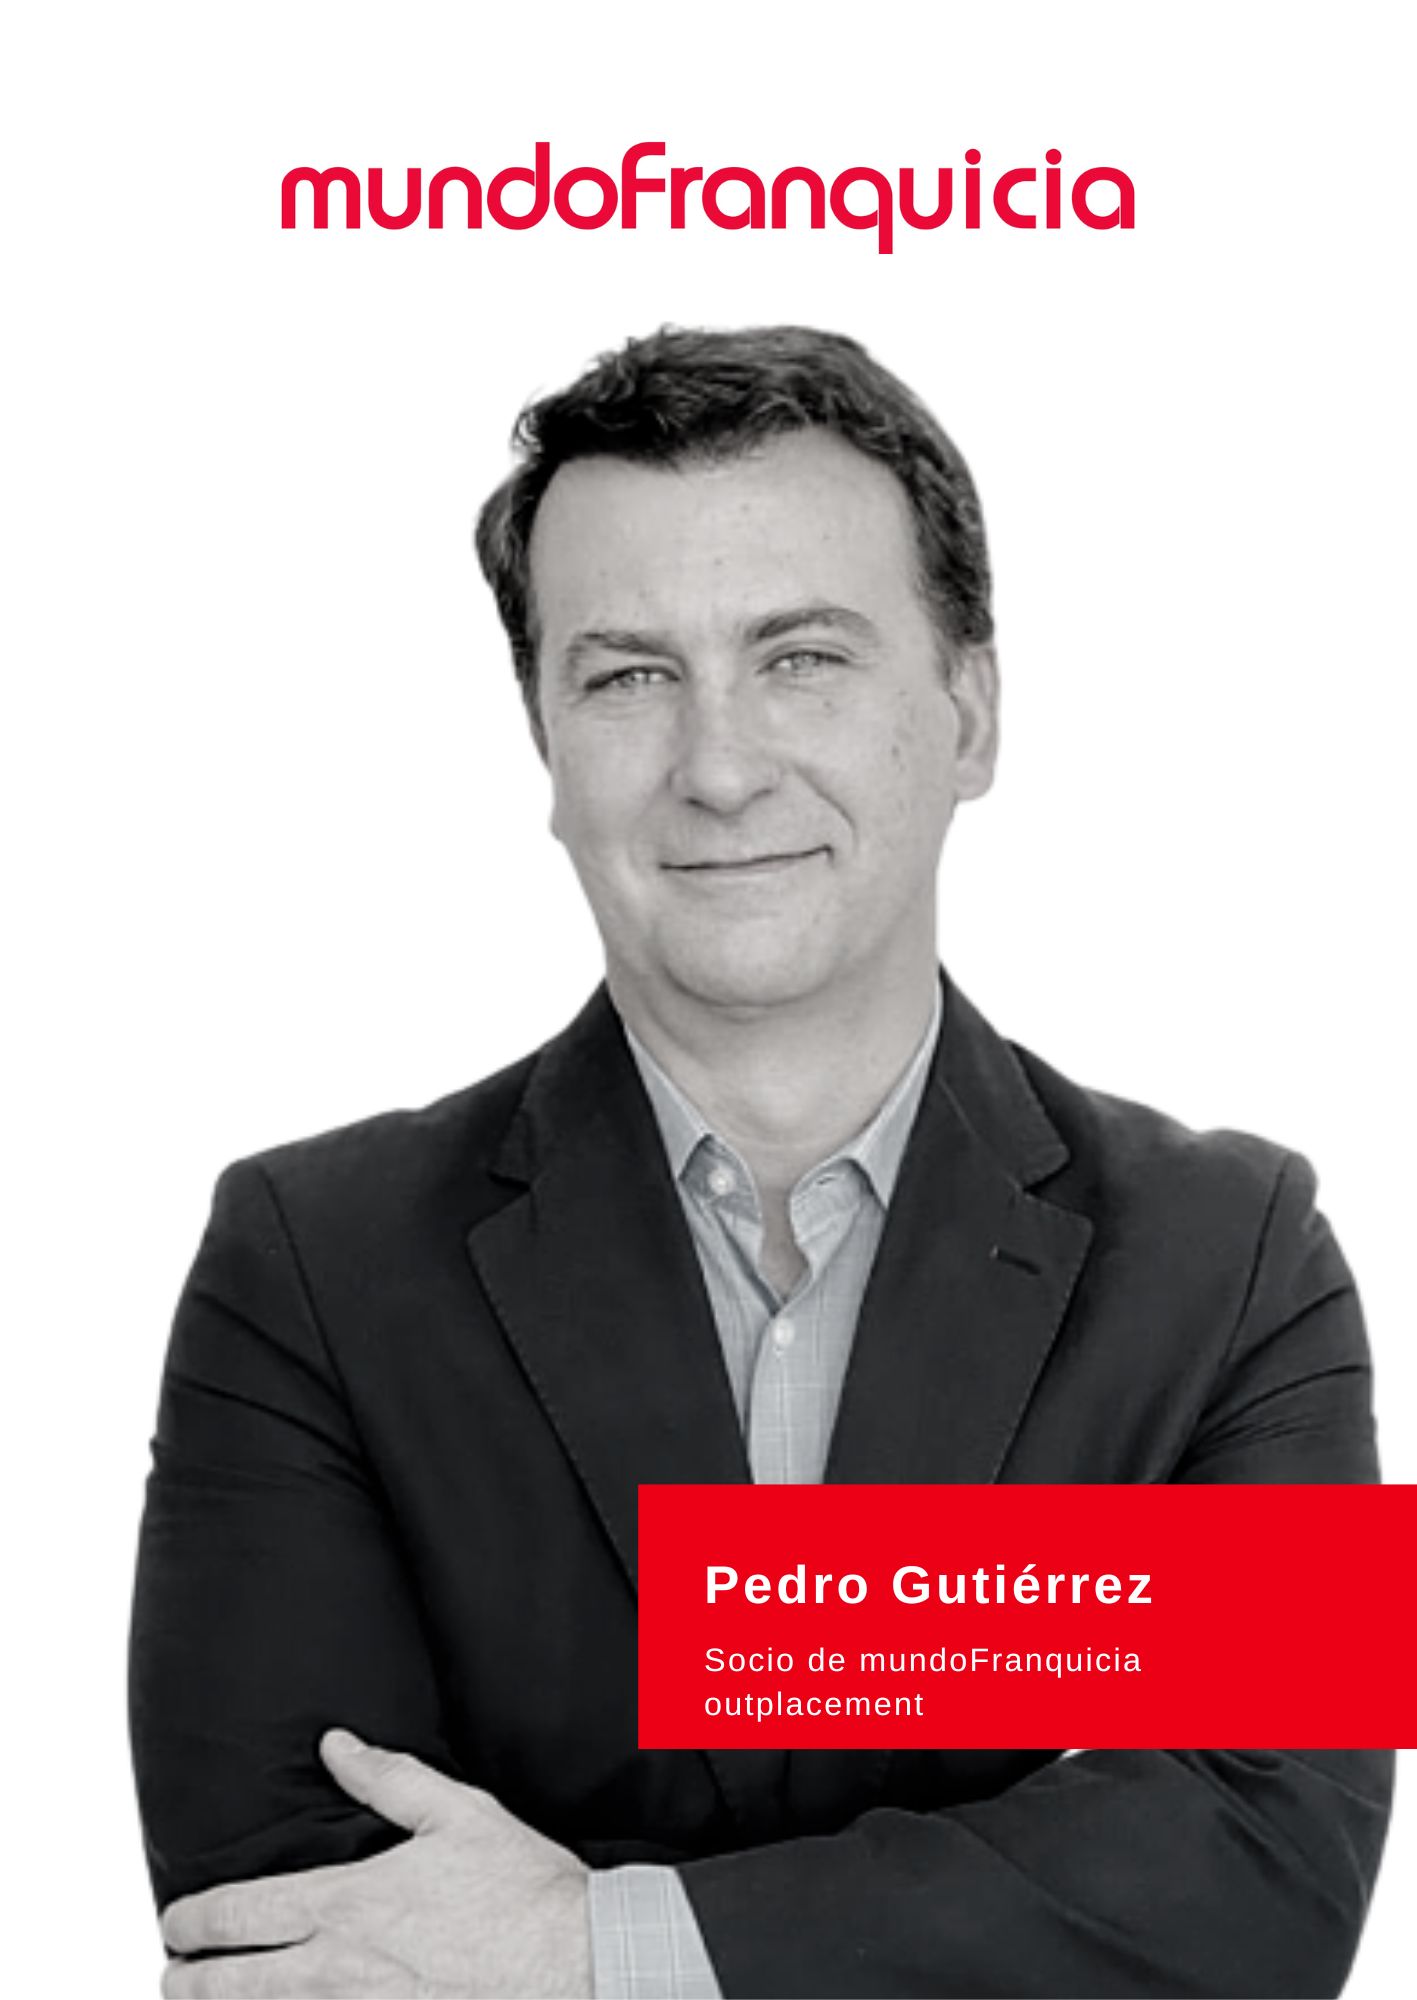 Pedro Gutiérrez